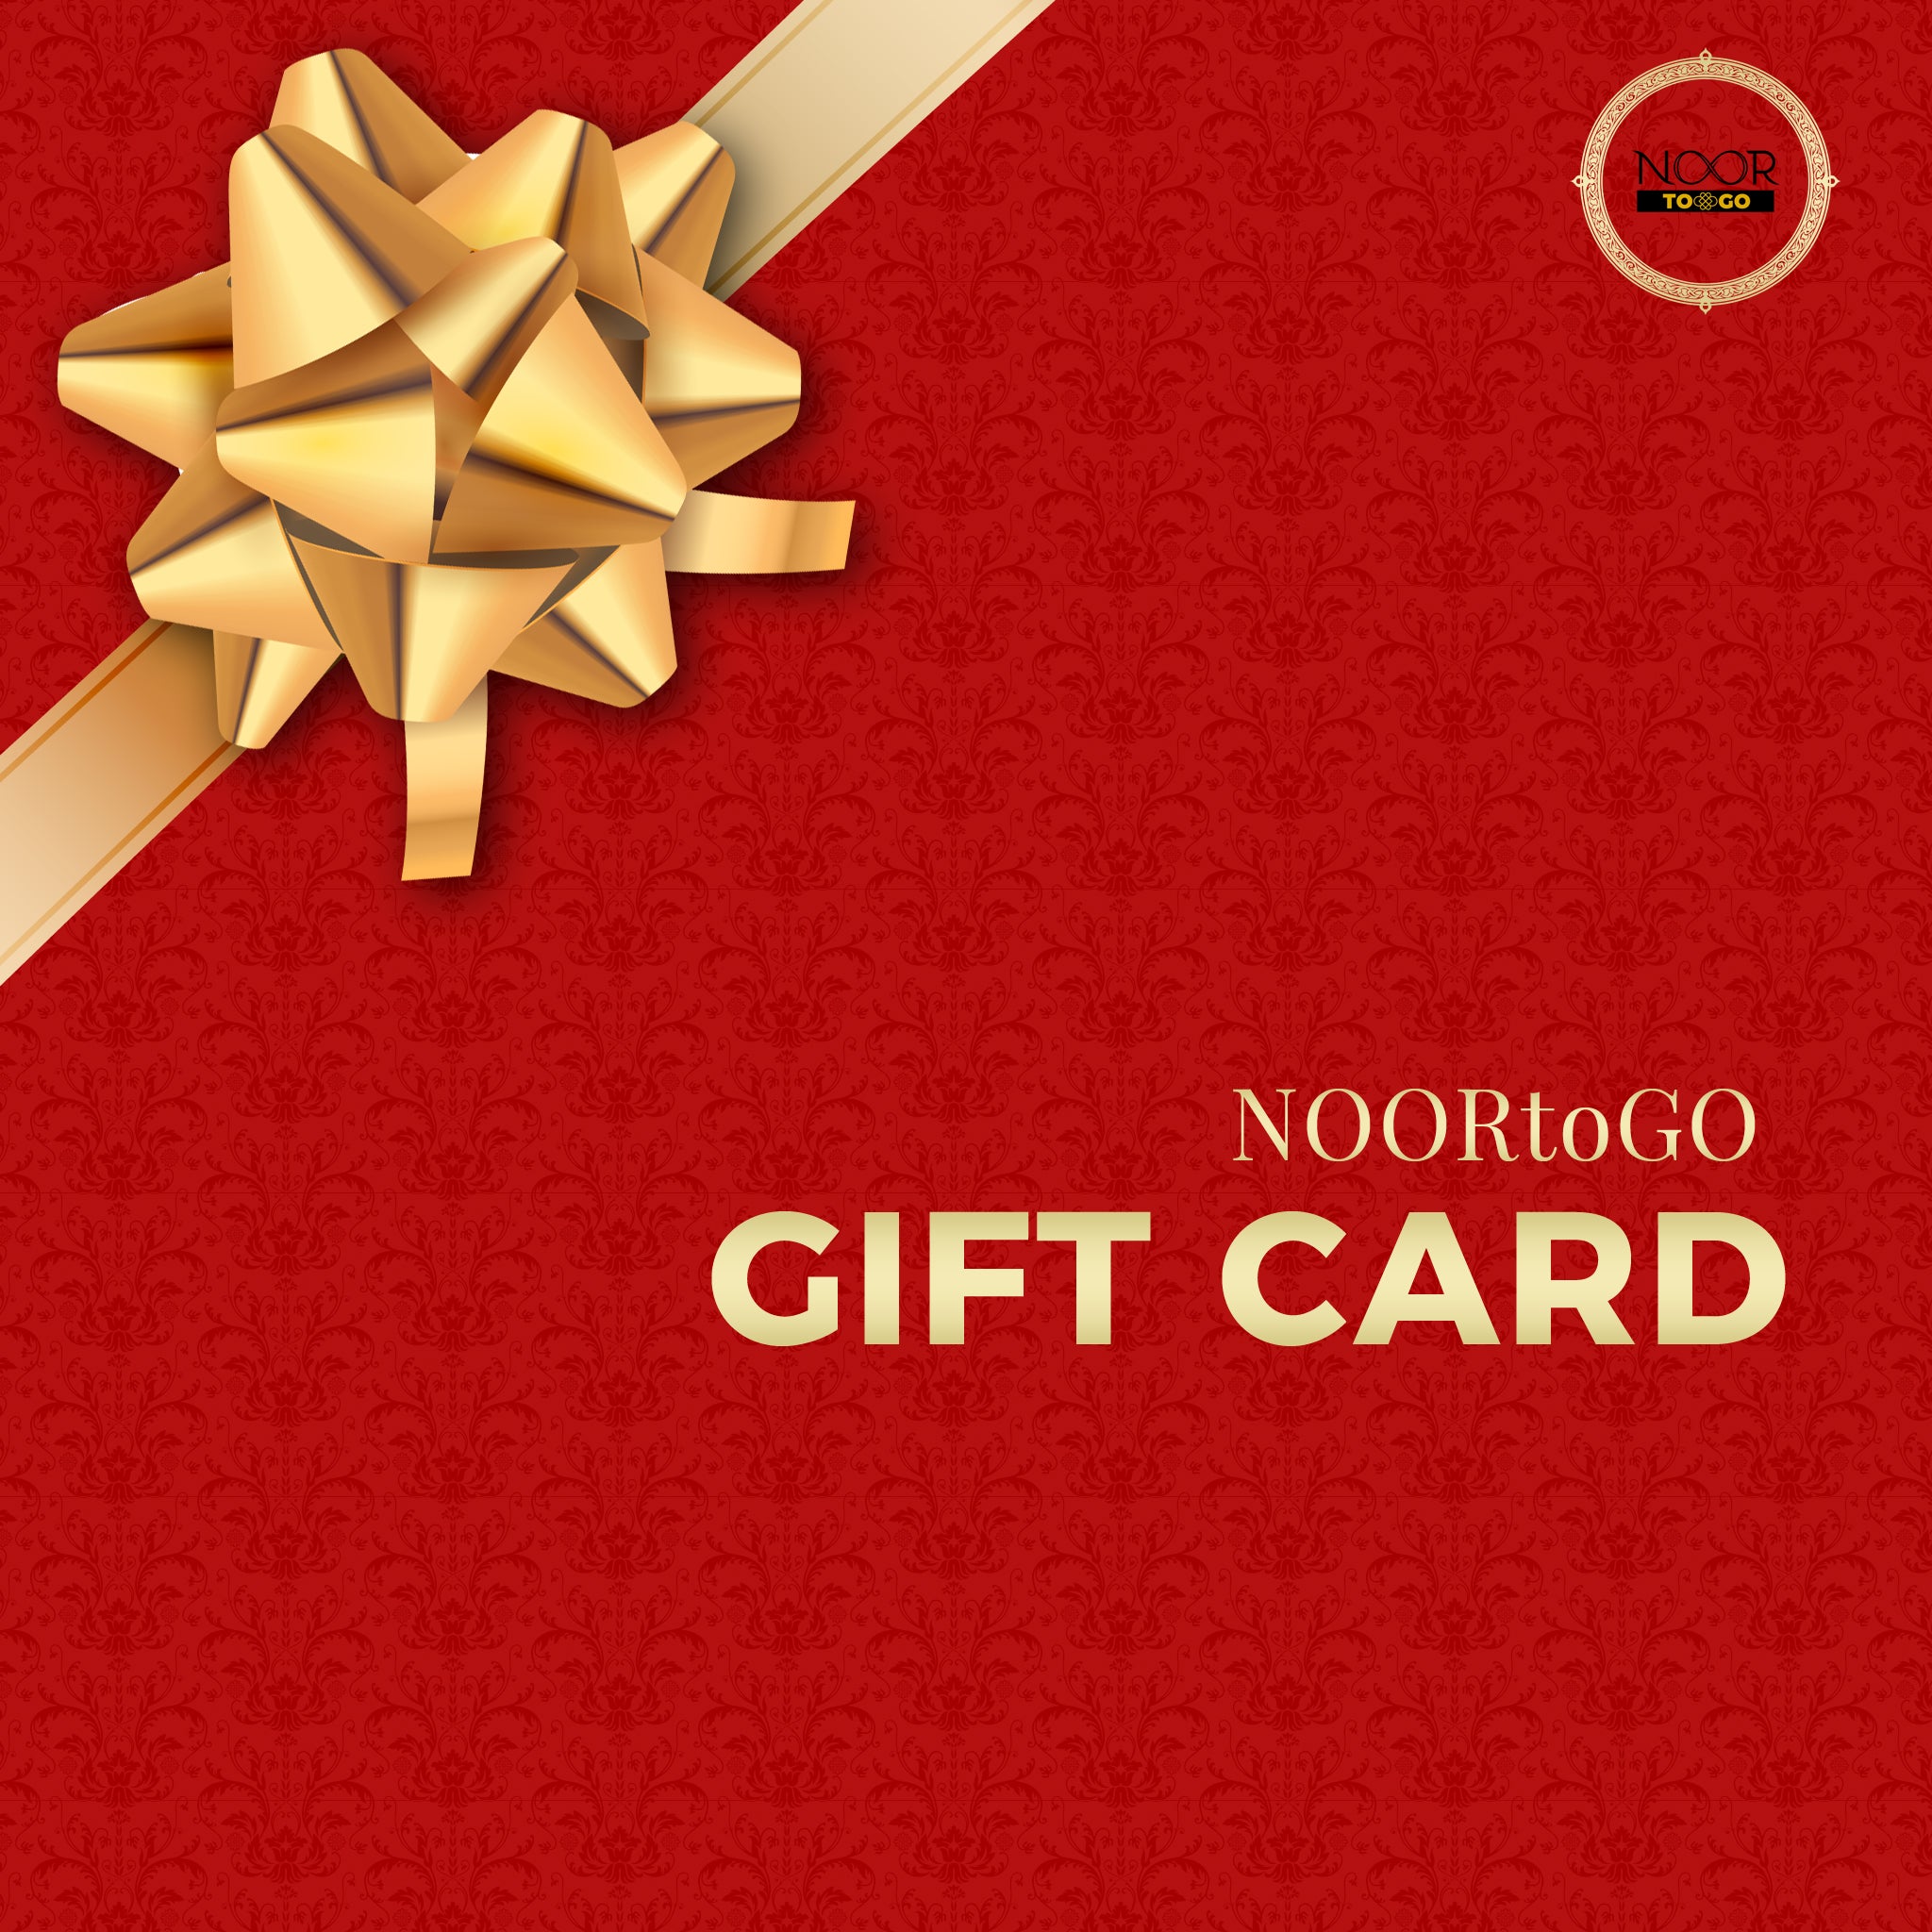 NOORtoGO Gift Card